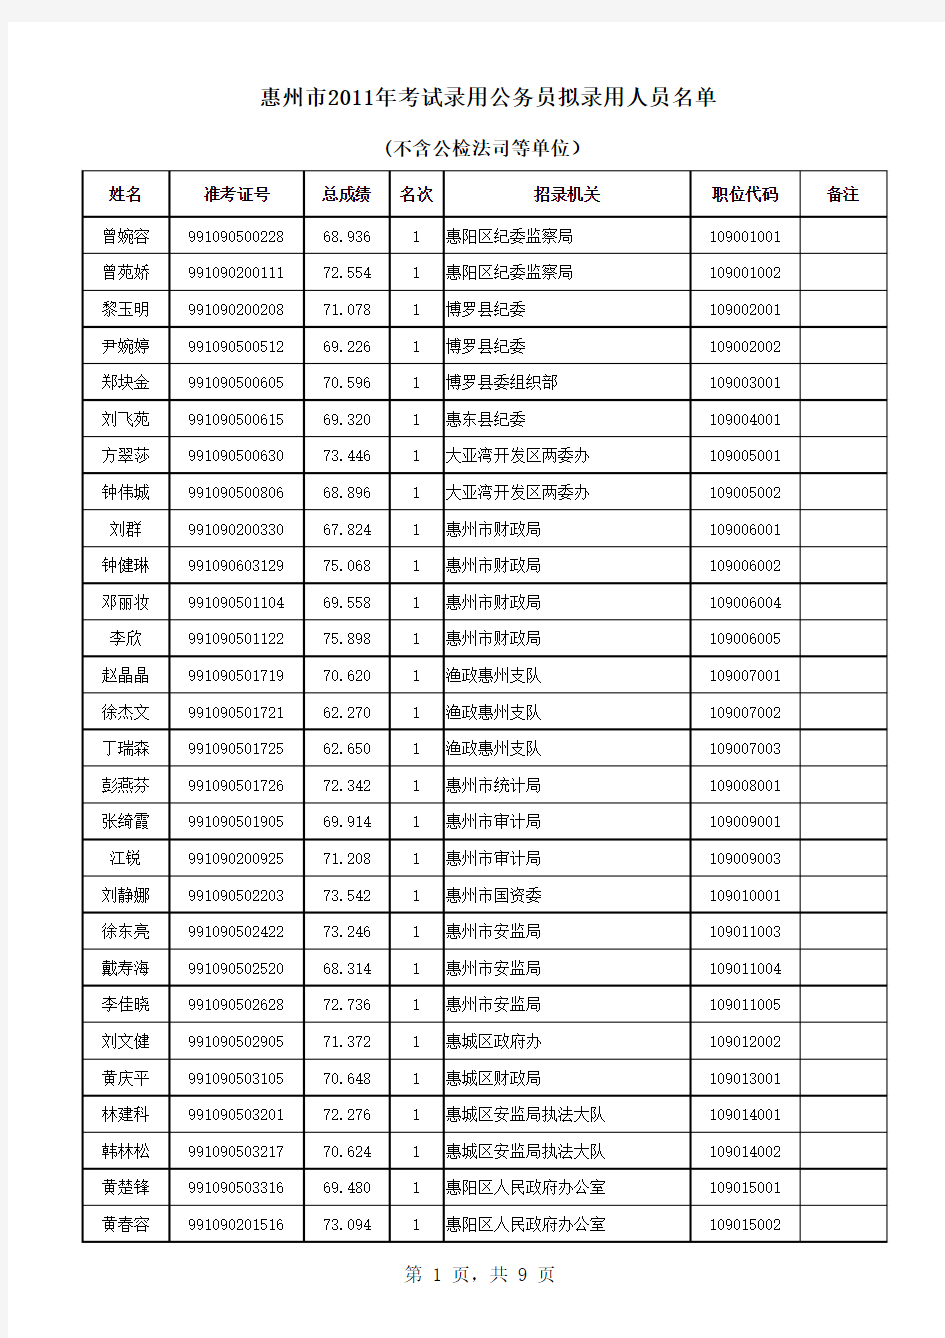 2011年惠州市公务员考试录用最终名单